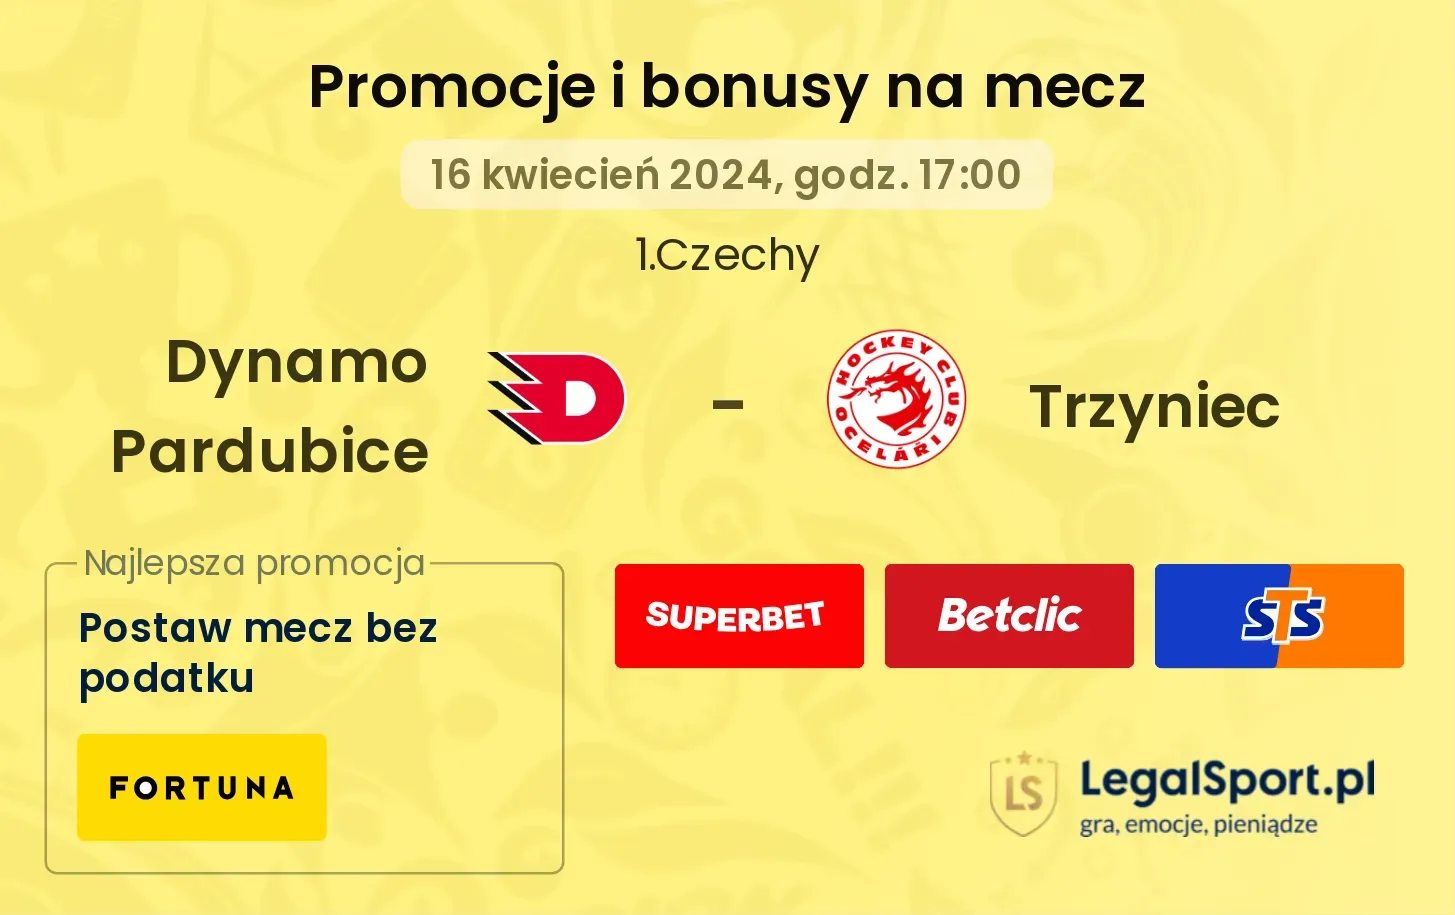 Dynamo Pardubice - Trzyniec promocje bonusy na mecz